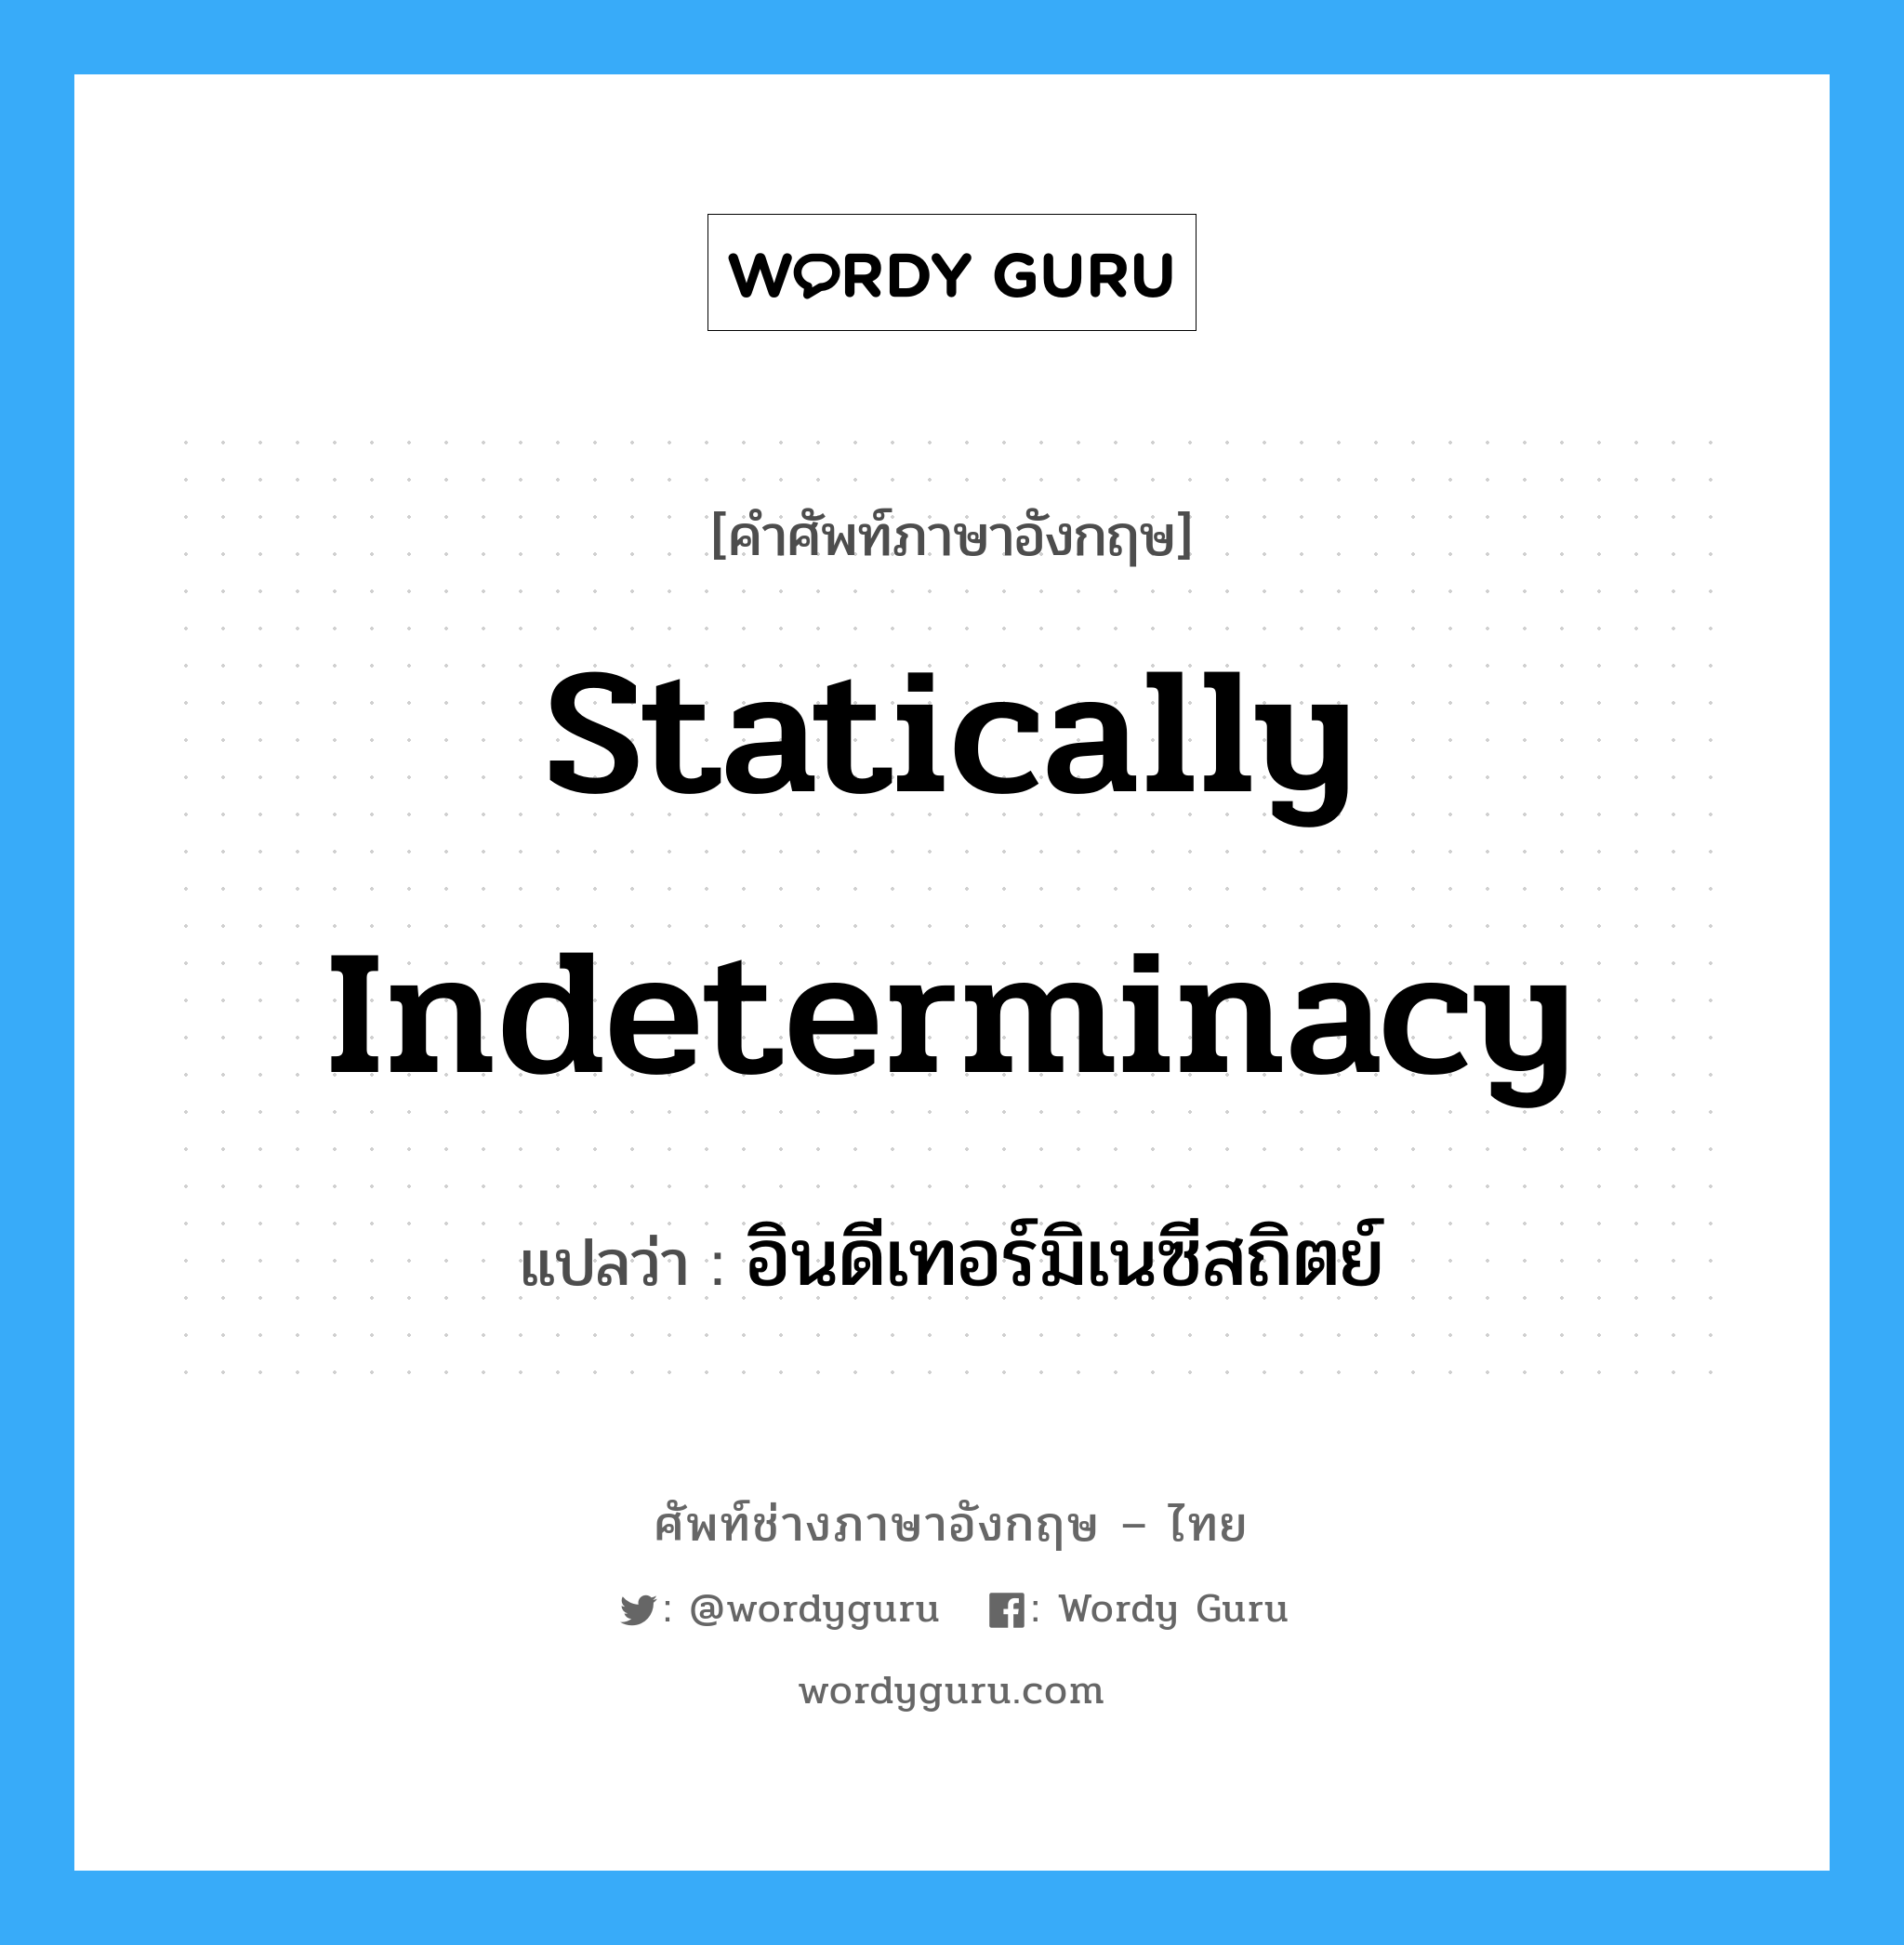 Statically Indeterminacy แปลว่า?, คำศัพท์ช่างภาษาอังกฤษ - ไทย Statically Indeterminacy คำศัพท์ภาษาอังกฤษ Statically Indeterminacy แปลว่า อินดีเทอร์มิเนซีสถิตย์